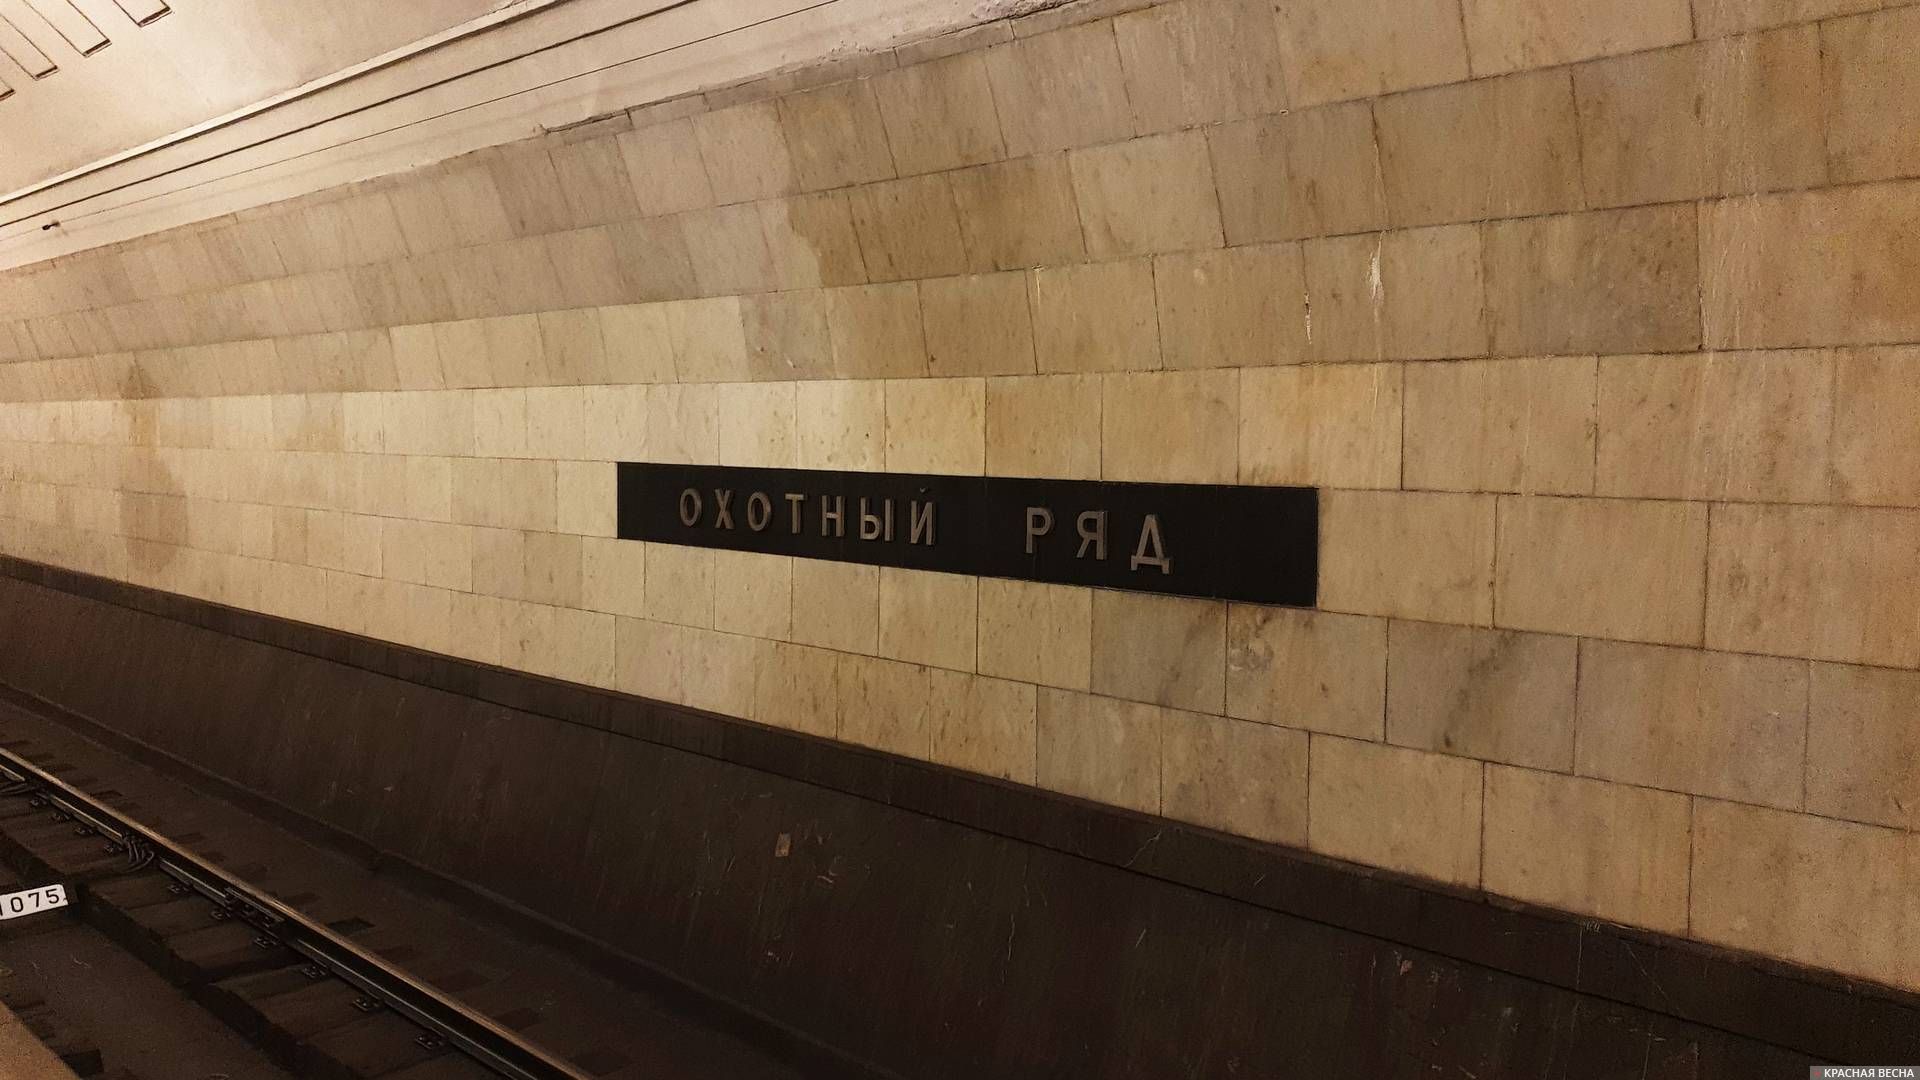 Название станции.